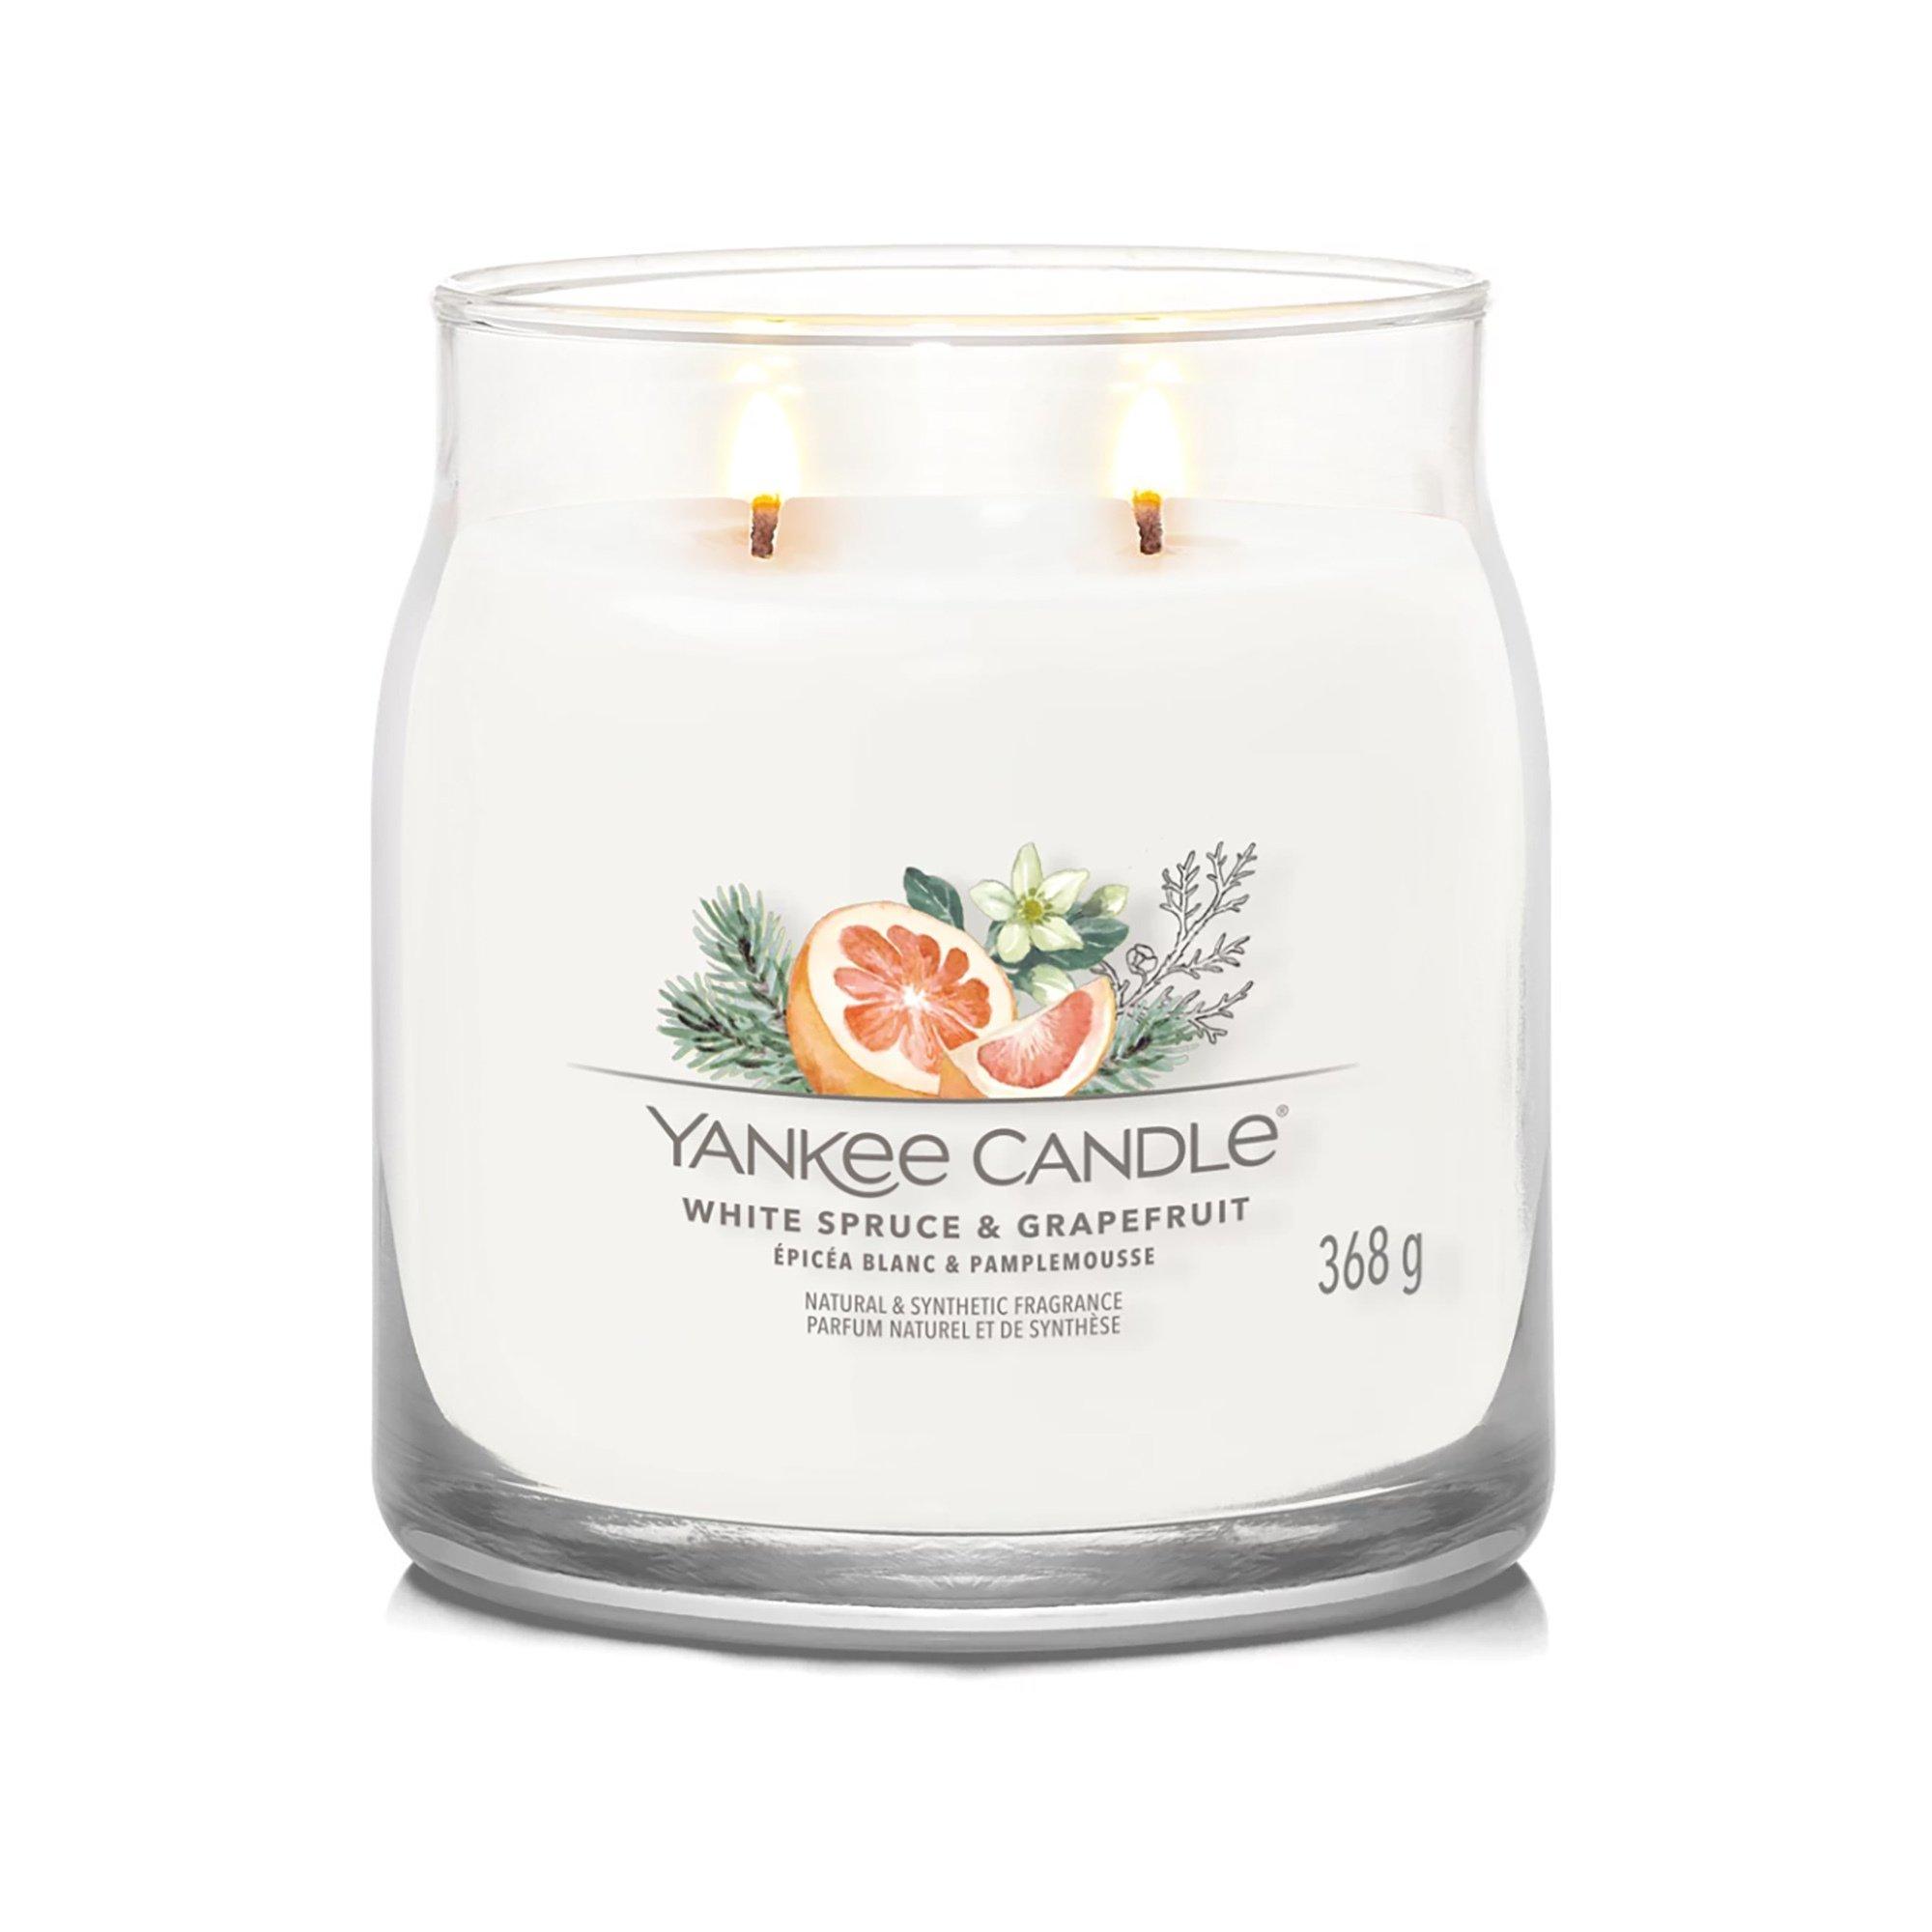 Yankee Candle Signature Duftkerze im Glas Weihnachten White Spruce & Grapefruit 